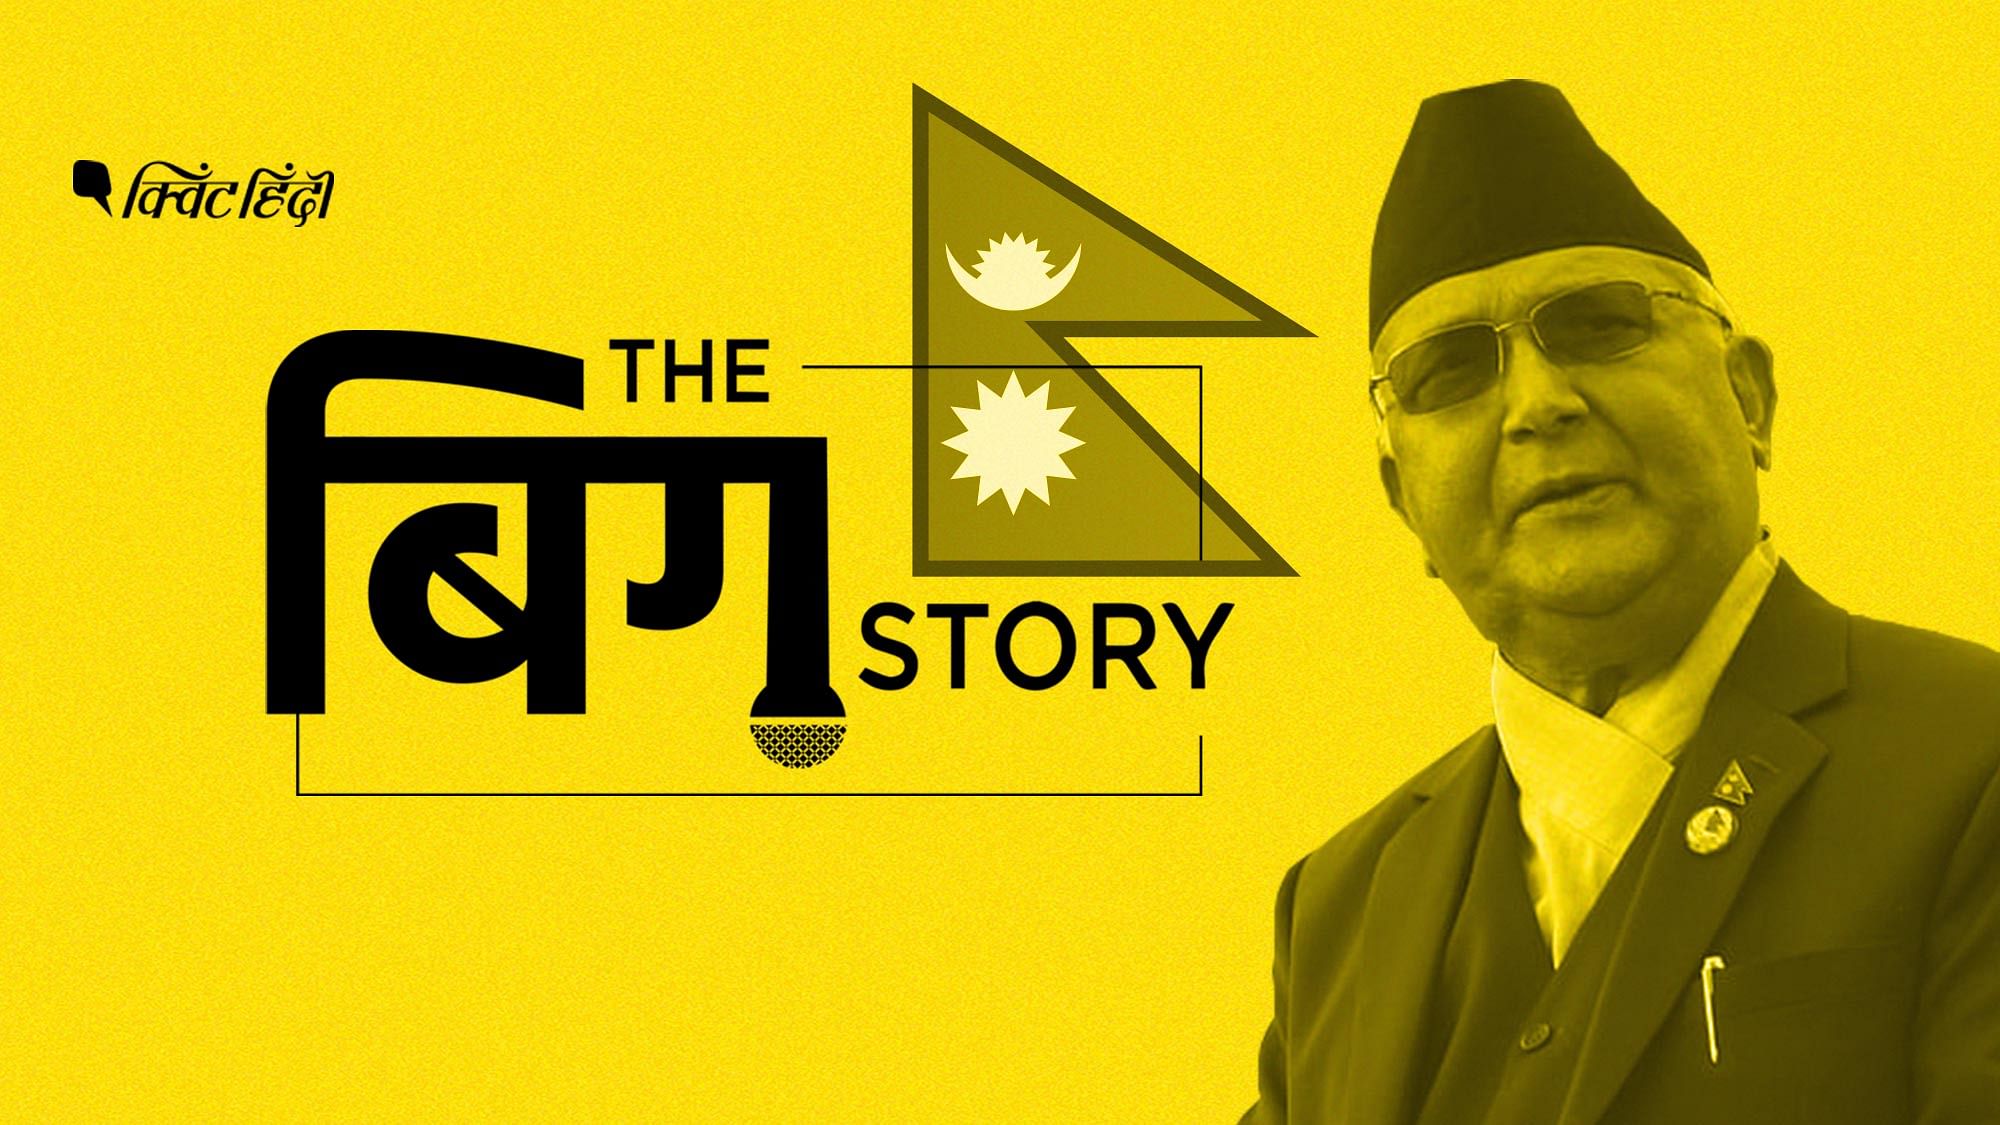 नेपाल में बदलते राजनीतिक हालात भारत पर क्या असर डालेंगे? सुनिए पॉडकास्ट&nbsp;